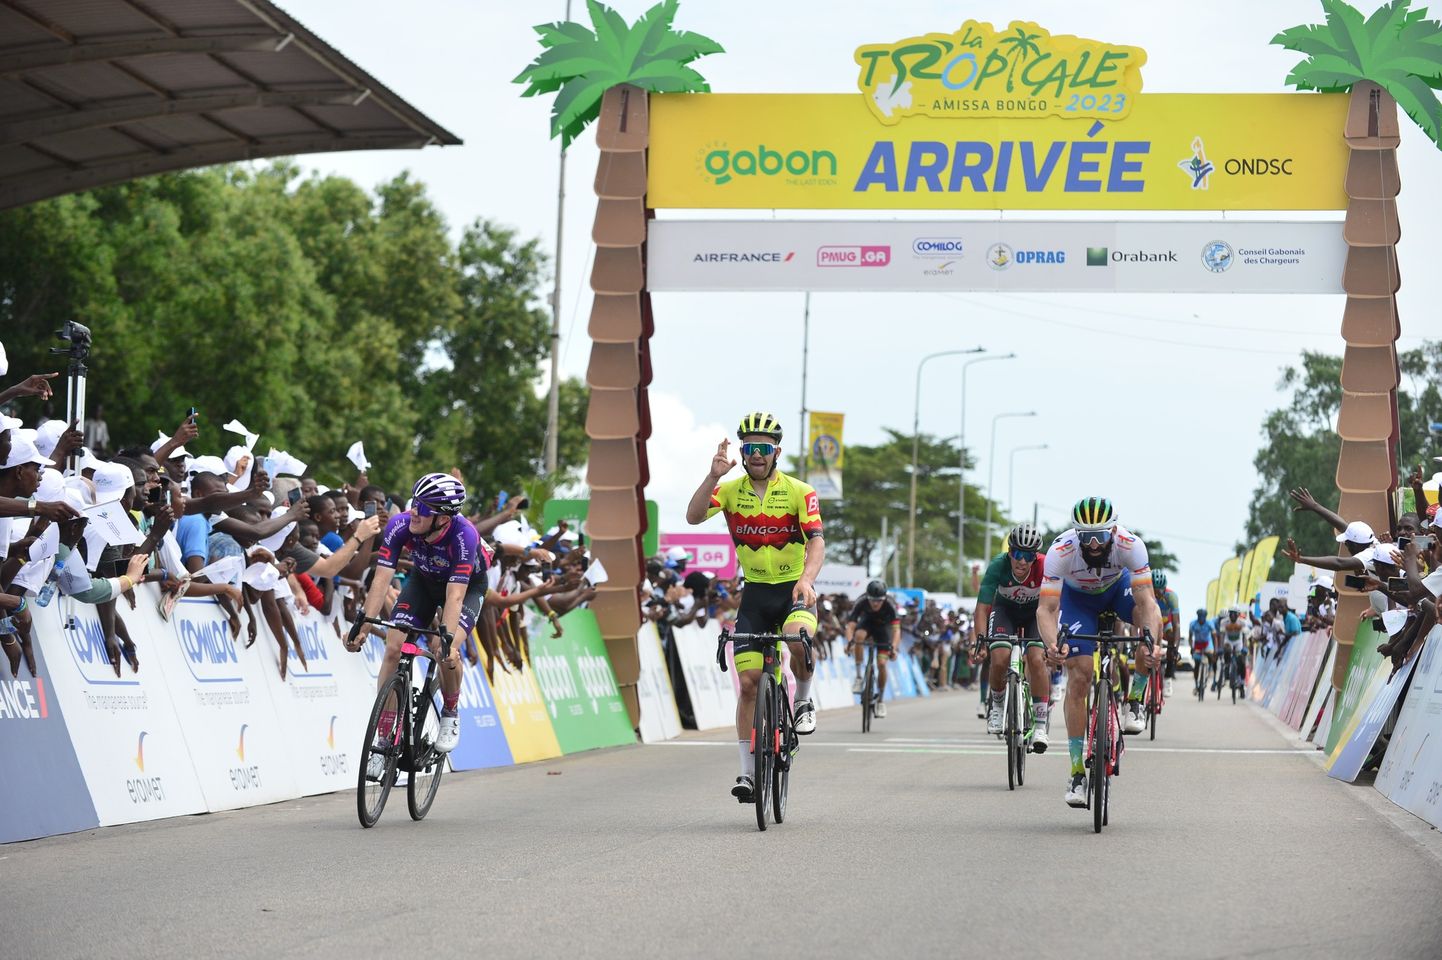 Karl Patrick Lauk (keskel kollases) võitis La Tropicale Amissa Bongo velotuuri kuuenda etapi (Tropicale Amissa Bongo).